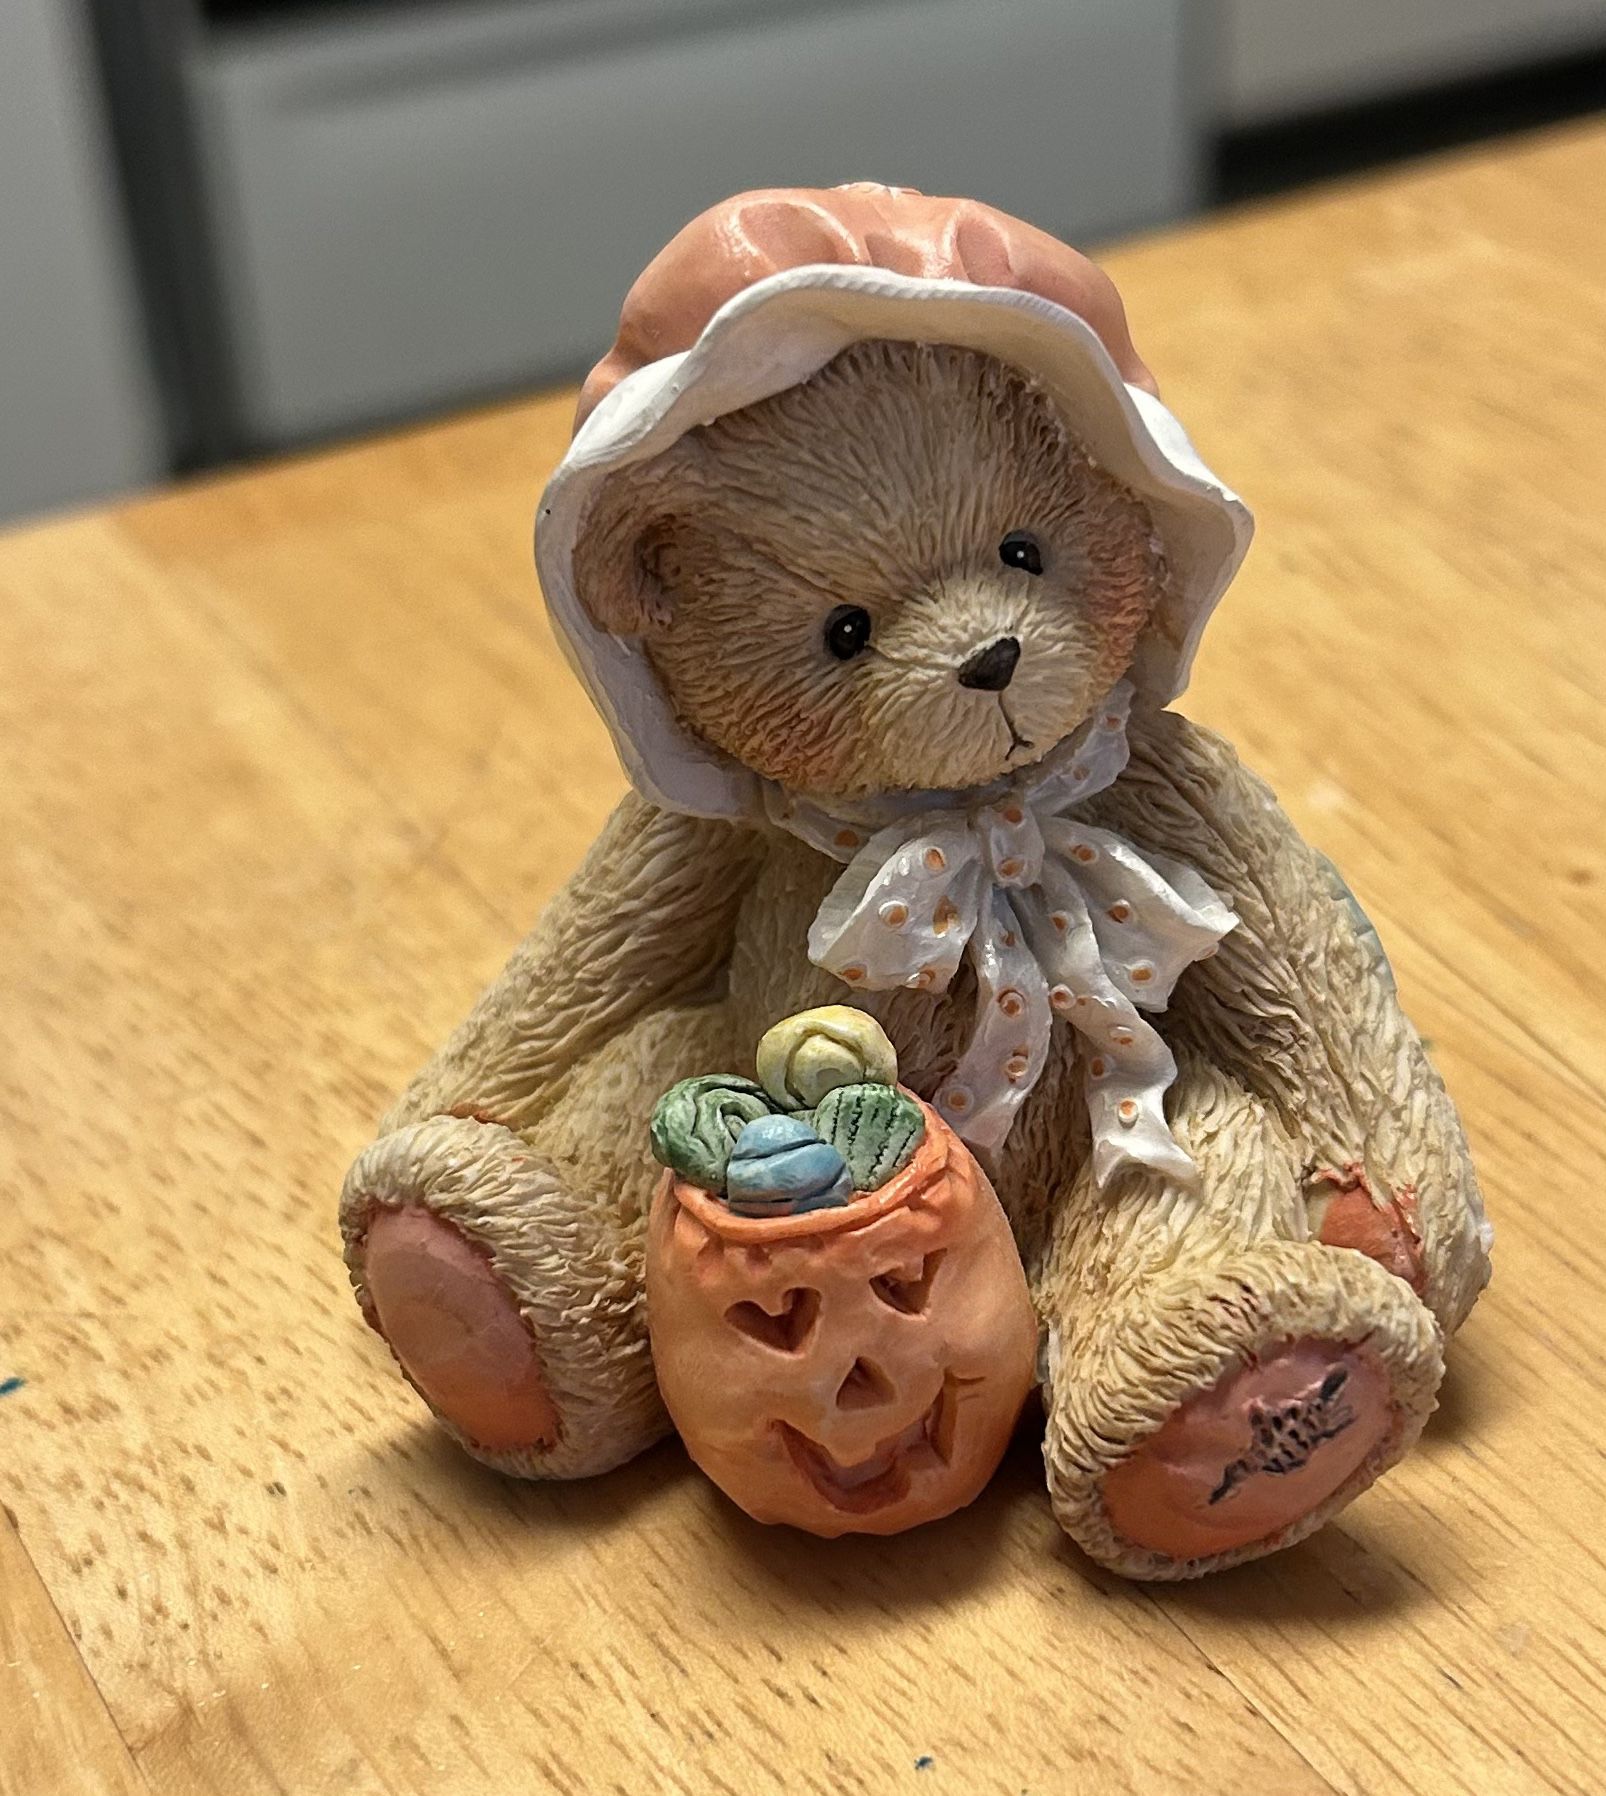 1 Cherished Teddies Halloween Figurine “Connie” Bear 